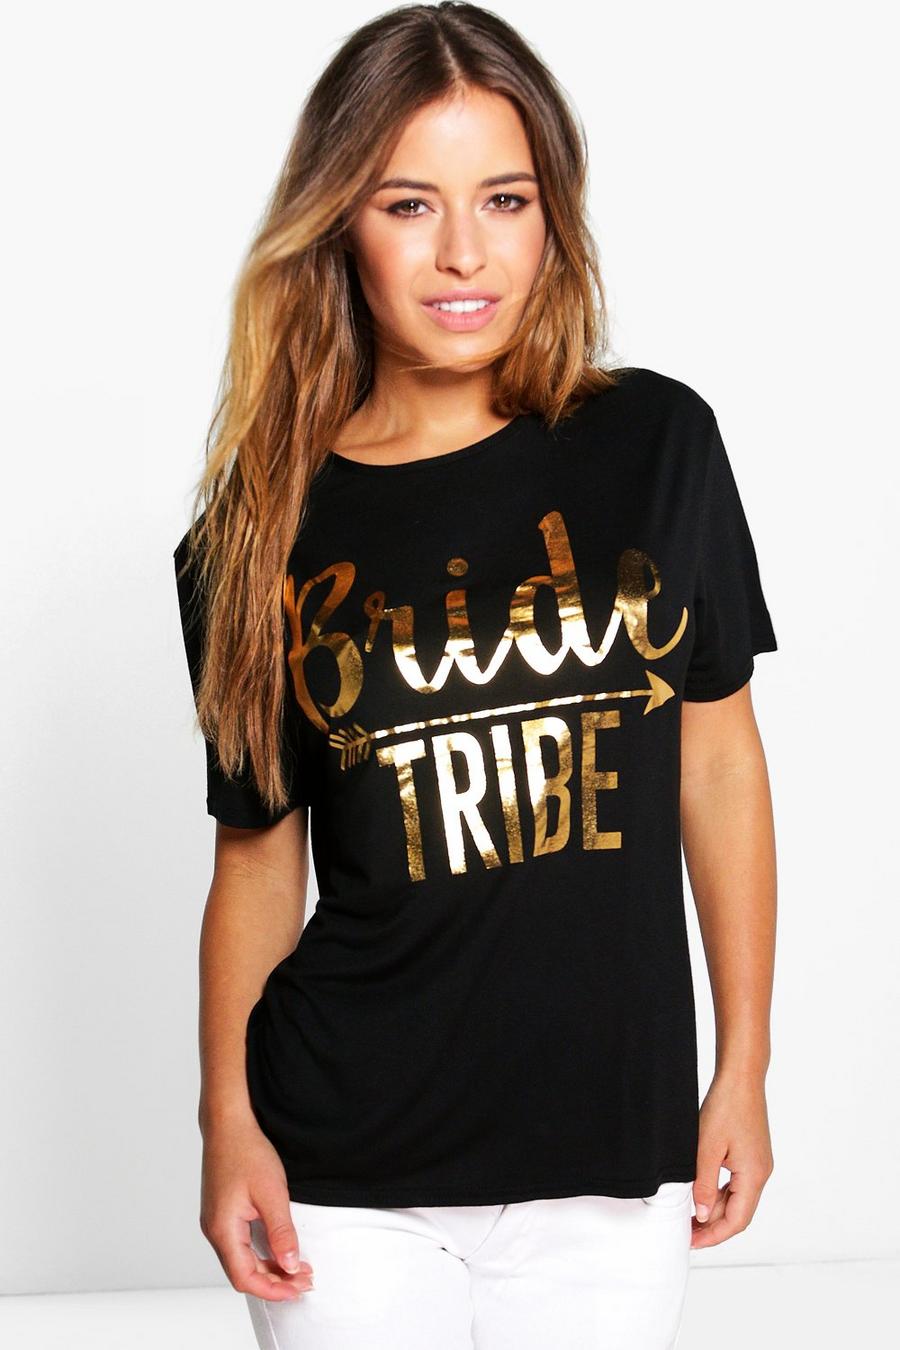 Petite Corine T-shirt à Slogan « Tribu Bride », Noir image number 1